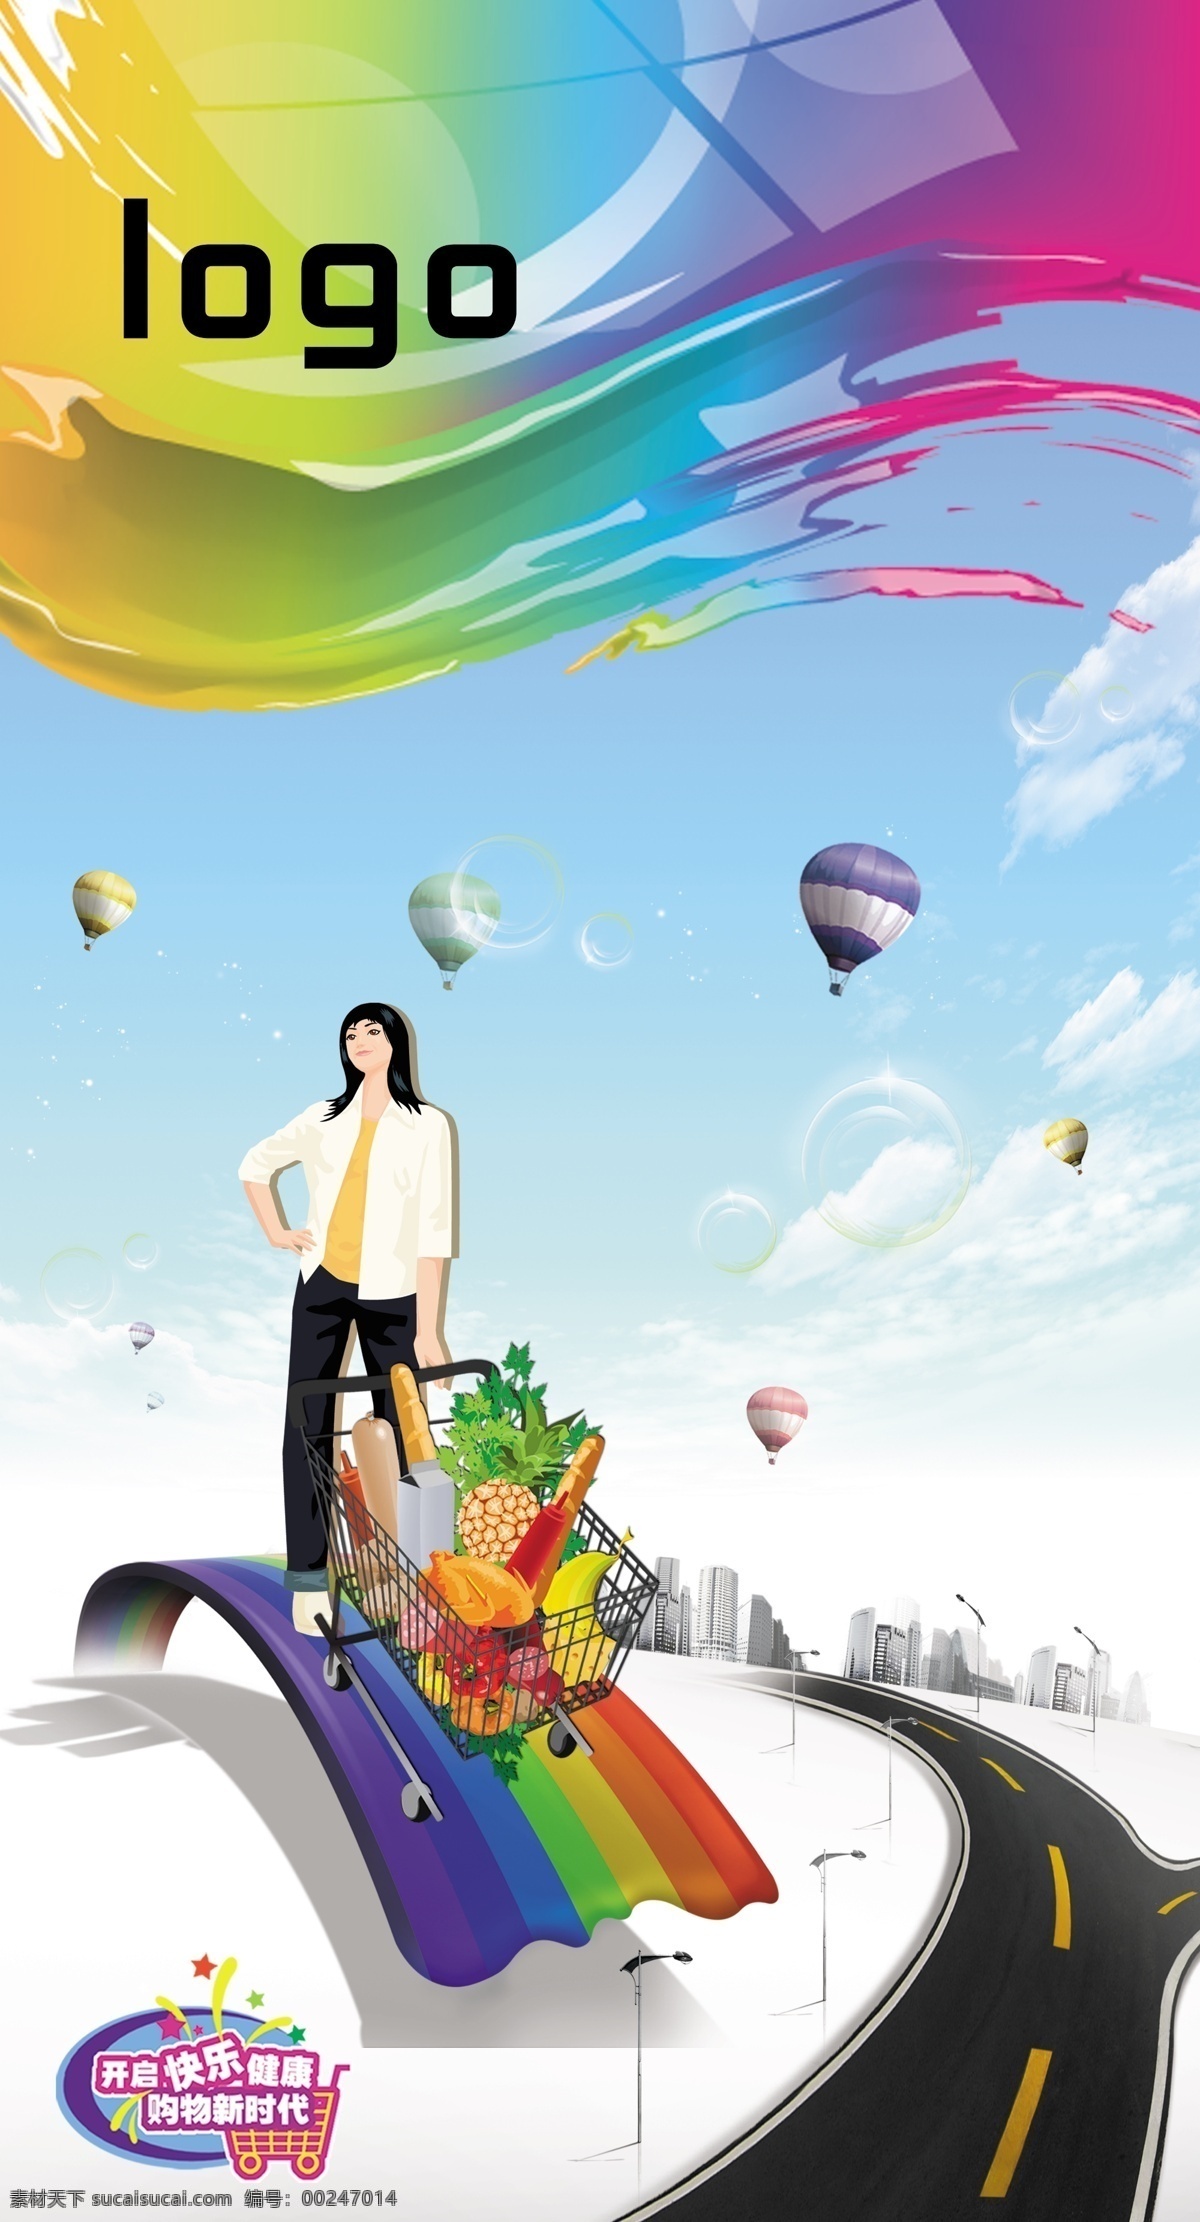 形象 超市 画面 模板 超市形象画面 海报 墙面 时尚 手推车 都市 插画 女孩 氢气球 公路 彩虹 广告设计模板 源文件 psd素材 红色